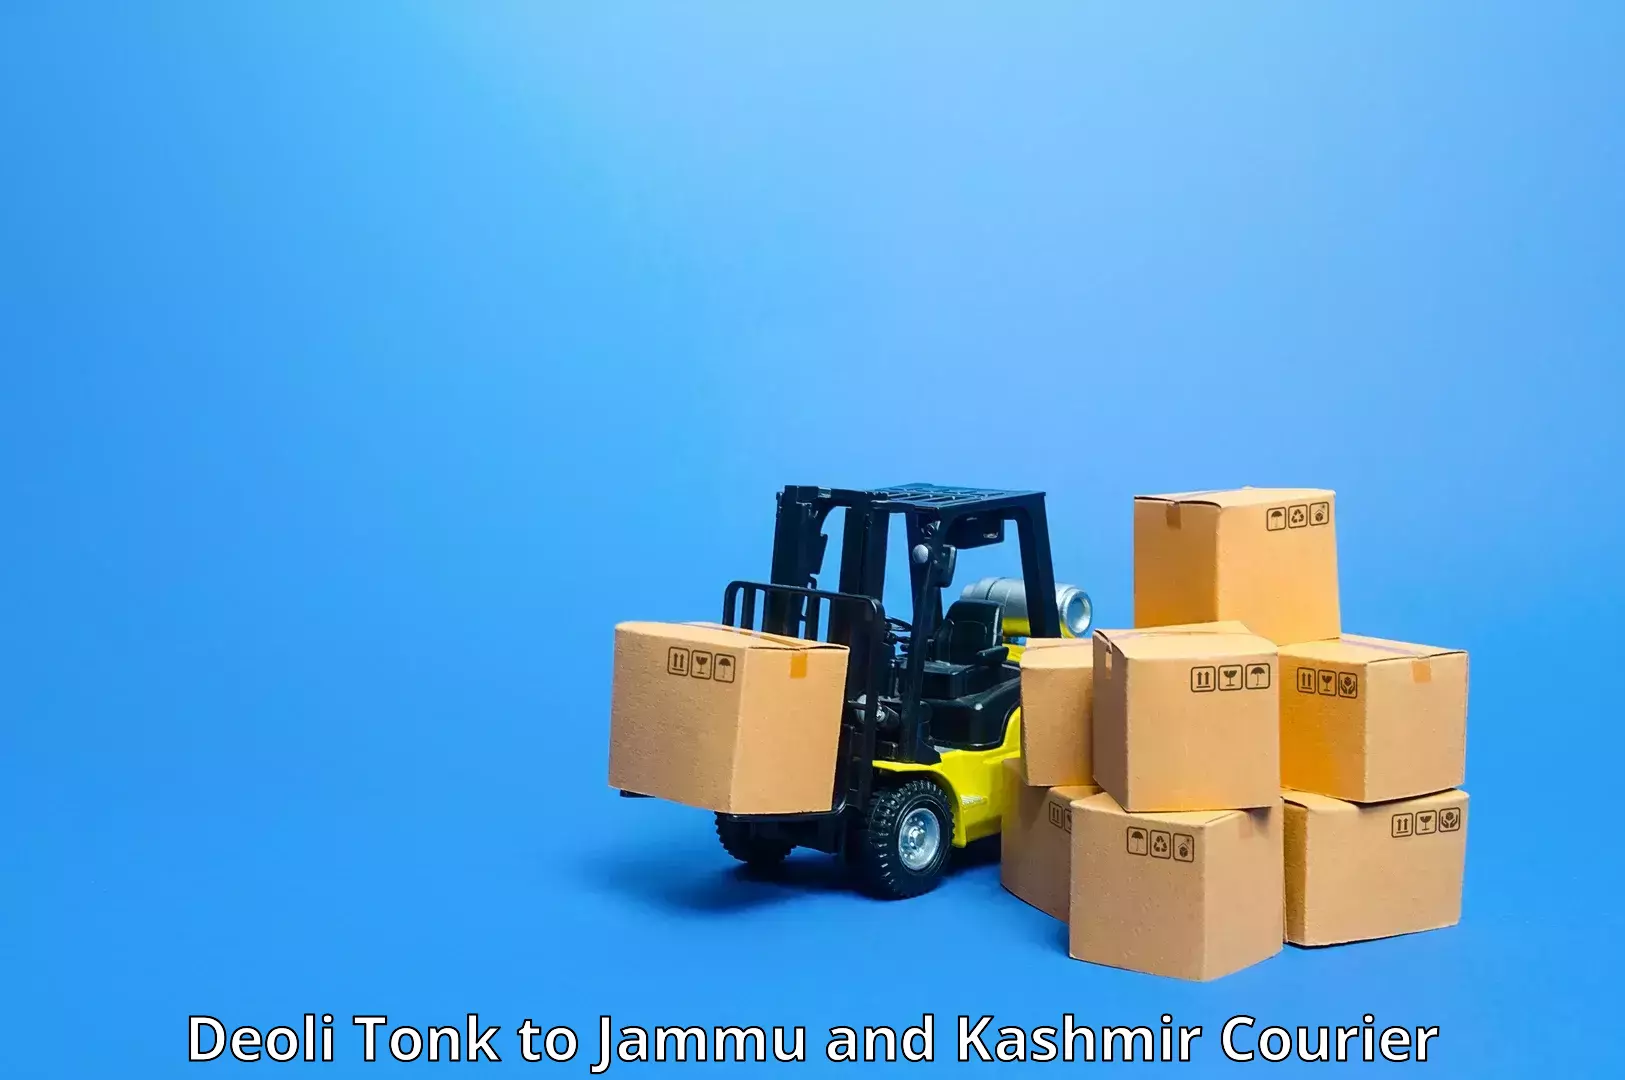 Courier app Deoli Tonk to Jammu and Kashmir